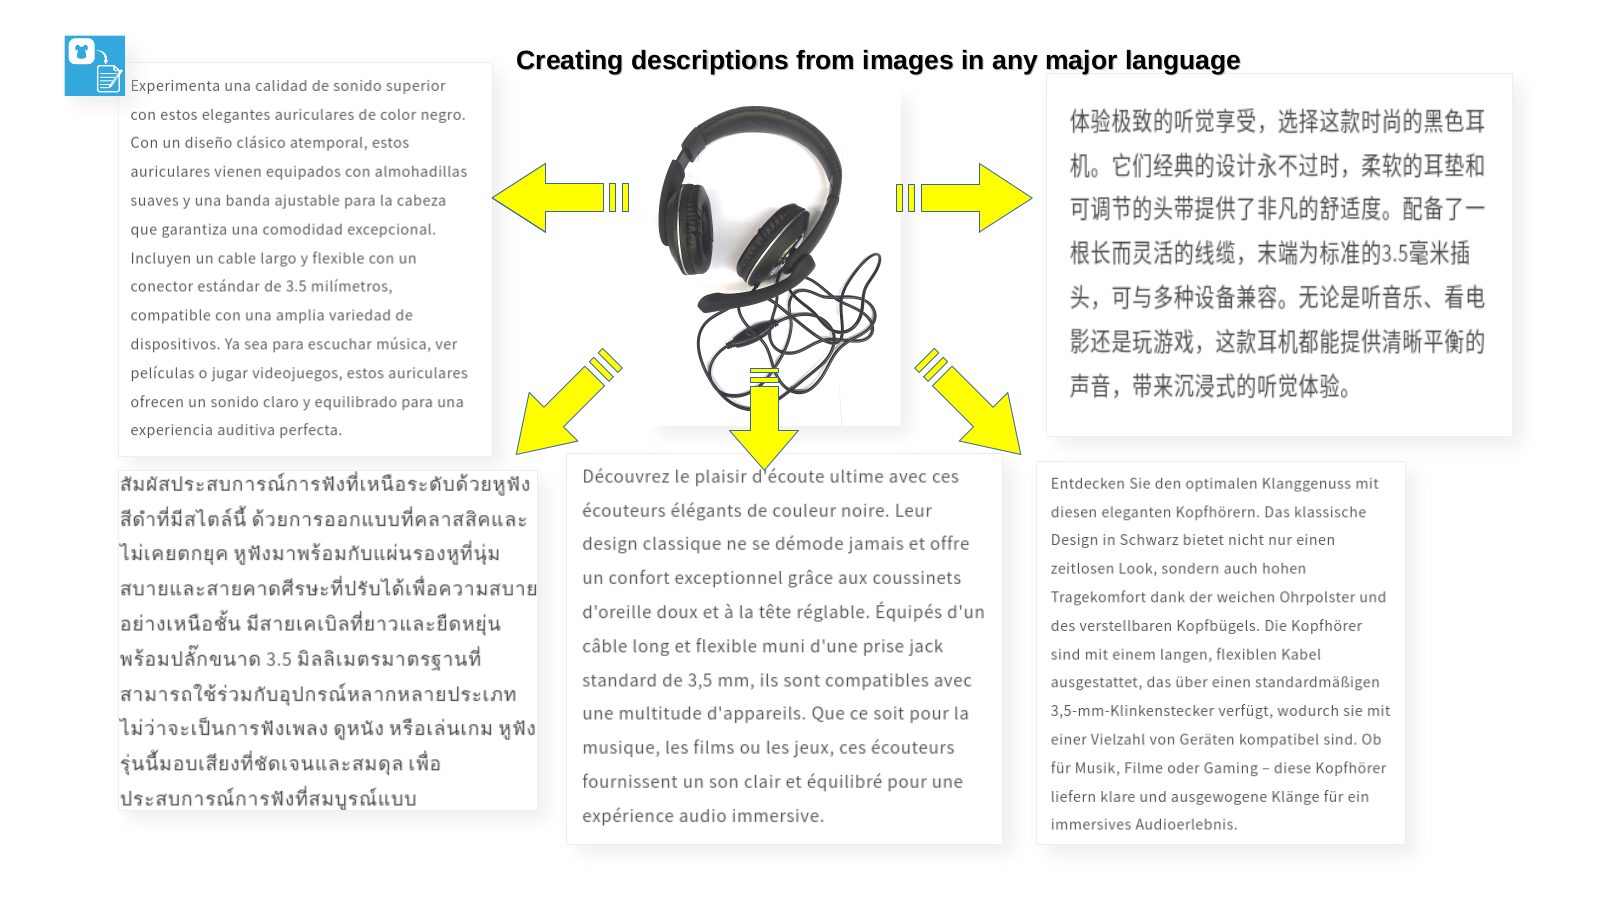 Produktbilder und generierter Inhalt, mehrsprachiges Beispiel